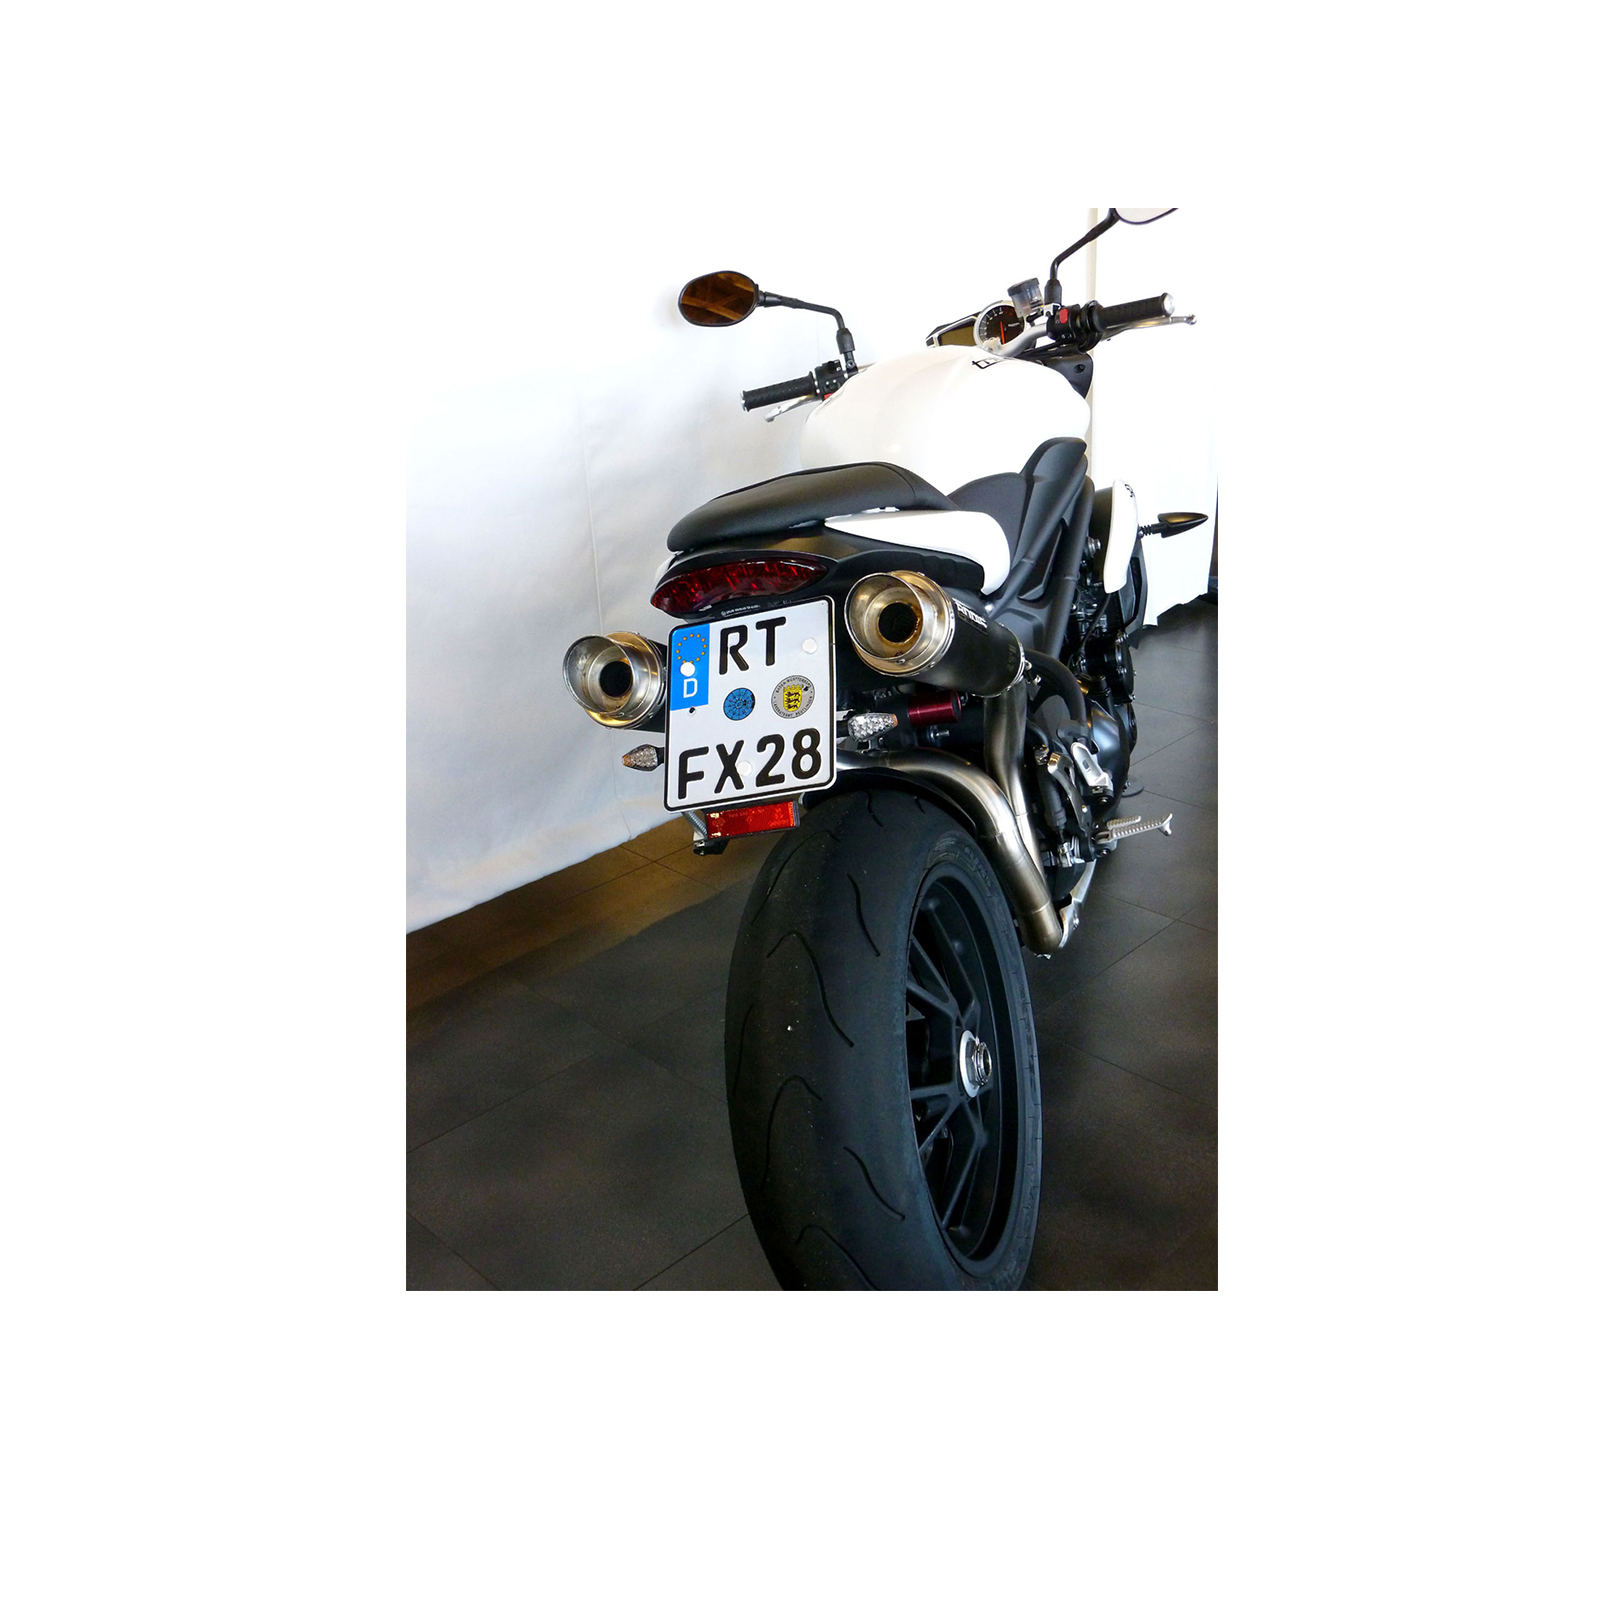 Motorrad-Auspuff-Anlagen von Bodis - Motorrad-Zubehör-Shop Motacc